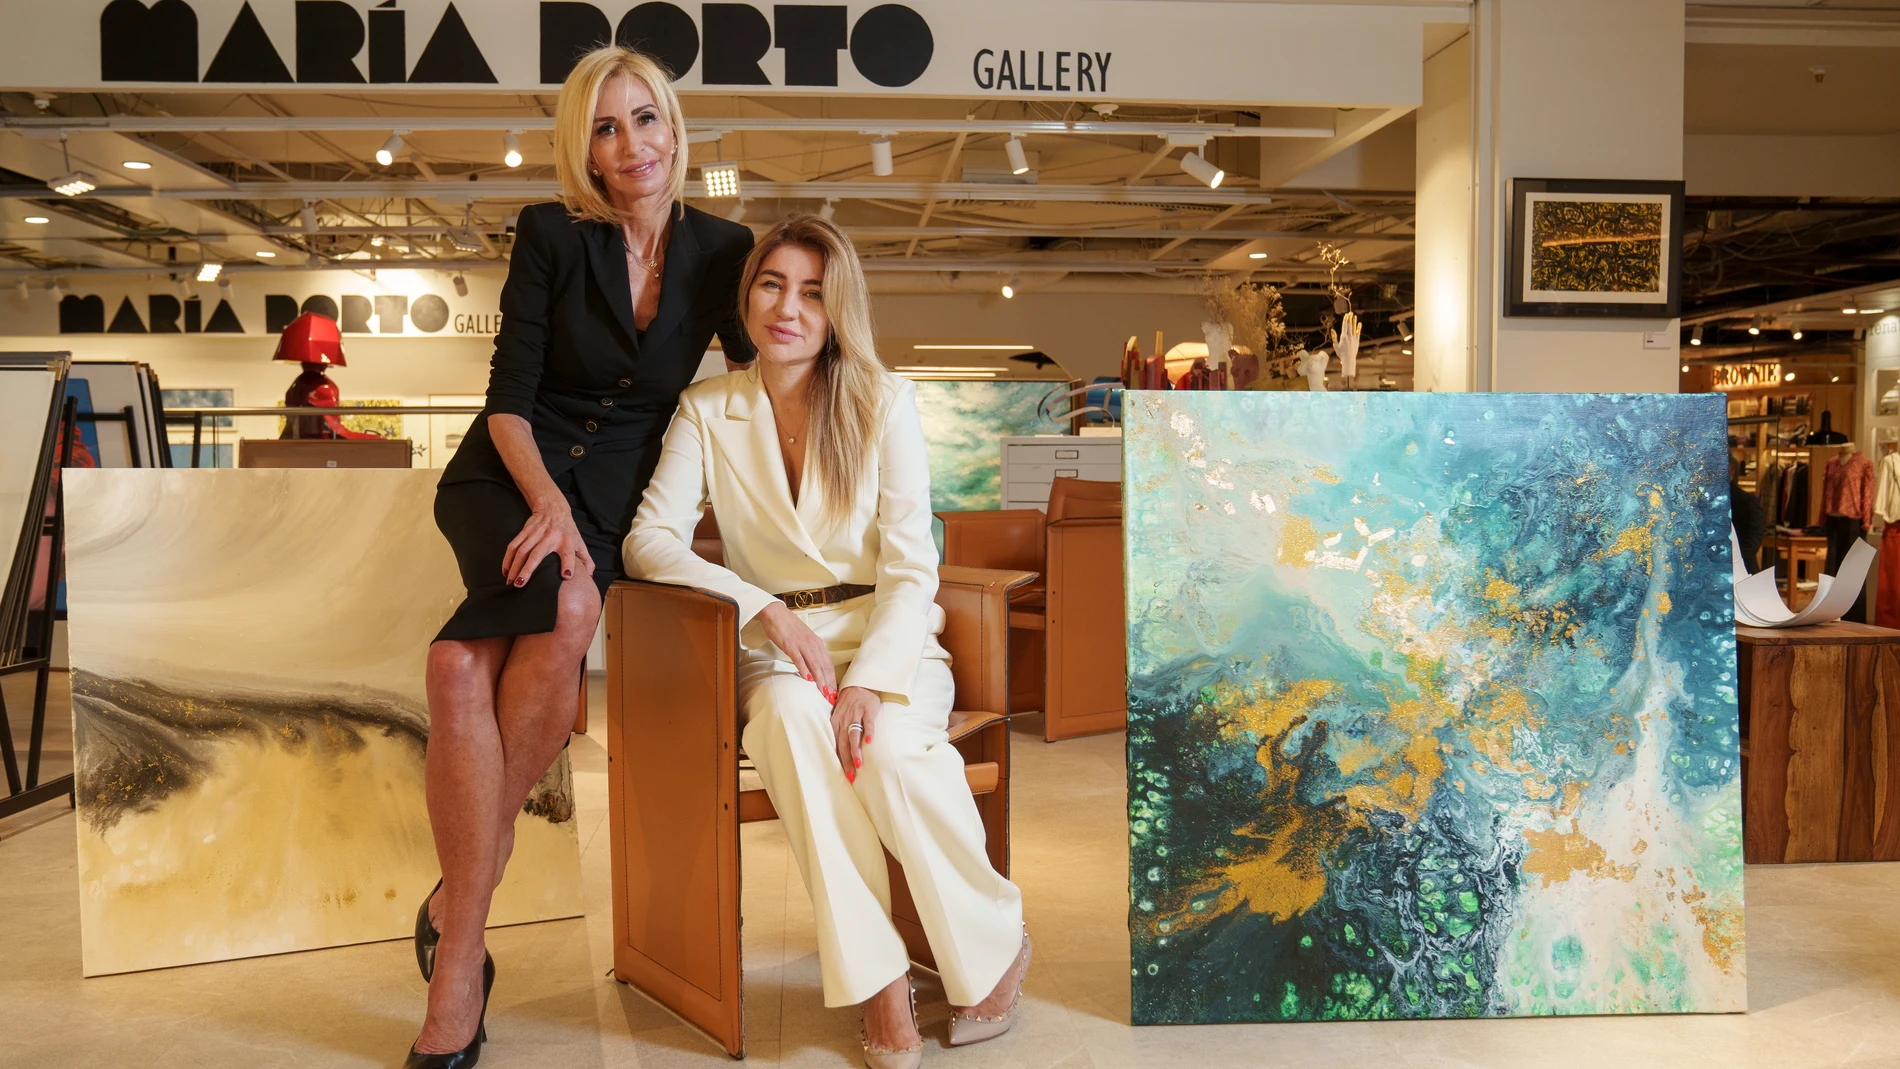 La galerista María Porto (izquierda) y la artista Elena Ksanti, en la Galería María Porto de Madrid junto a dos de los lienzos de Ksanti